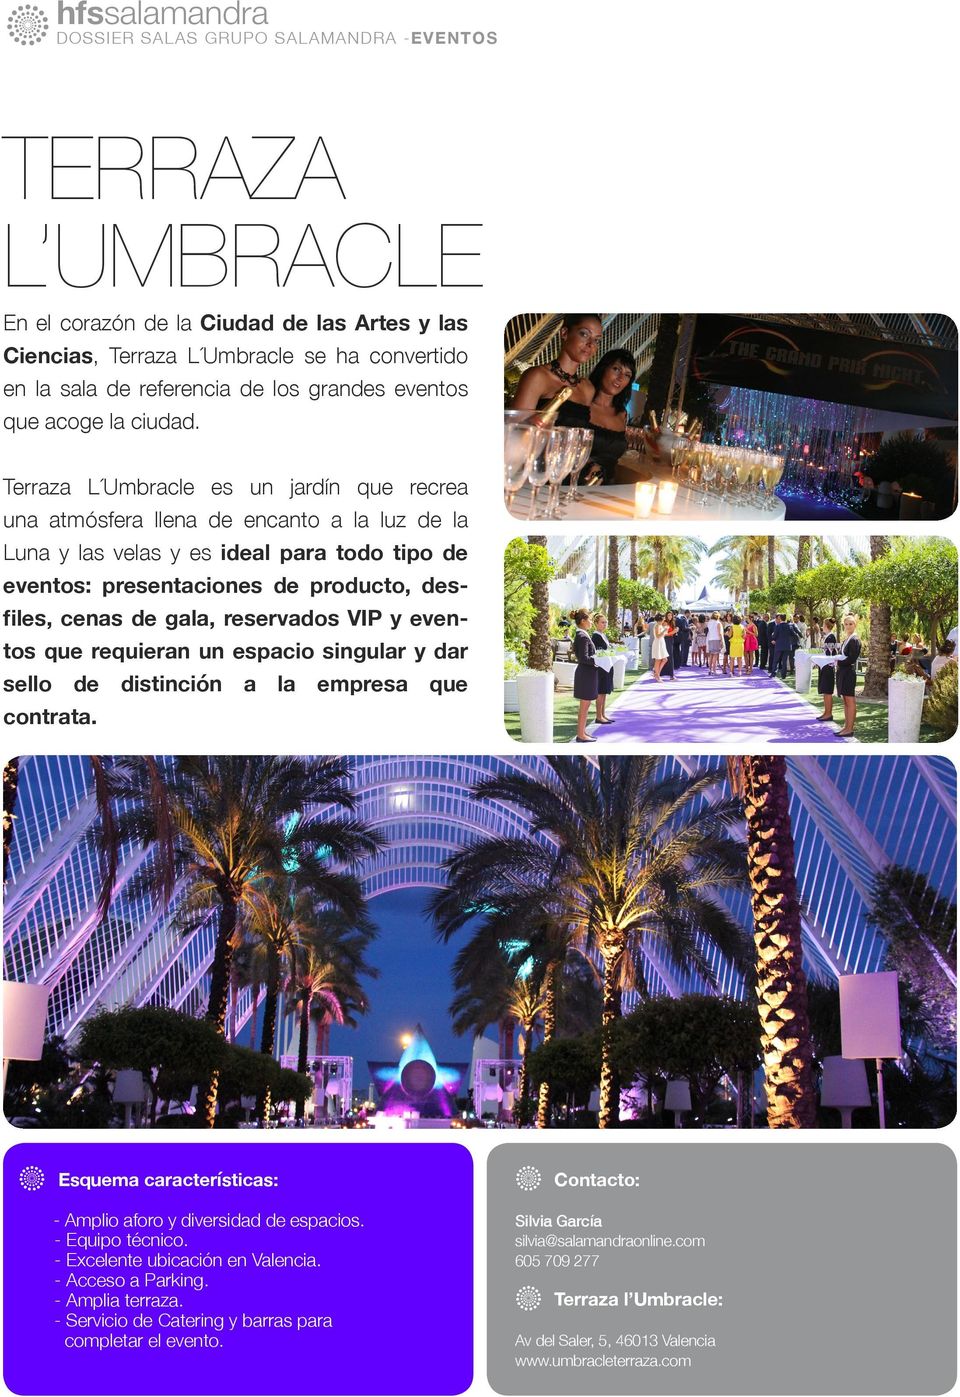 Terraza L Umbracle es un jardín que recrea una atmósfera llena de encanto a la luz de la Luna y las velas y es ideal para todo tipo de eventos: presentaciones de producto, desfiles, cenas de gala,